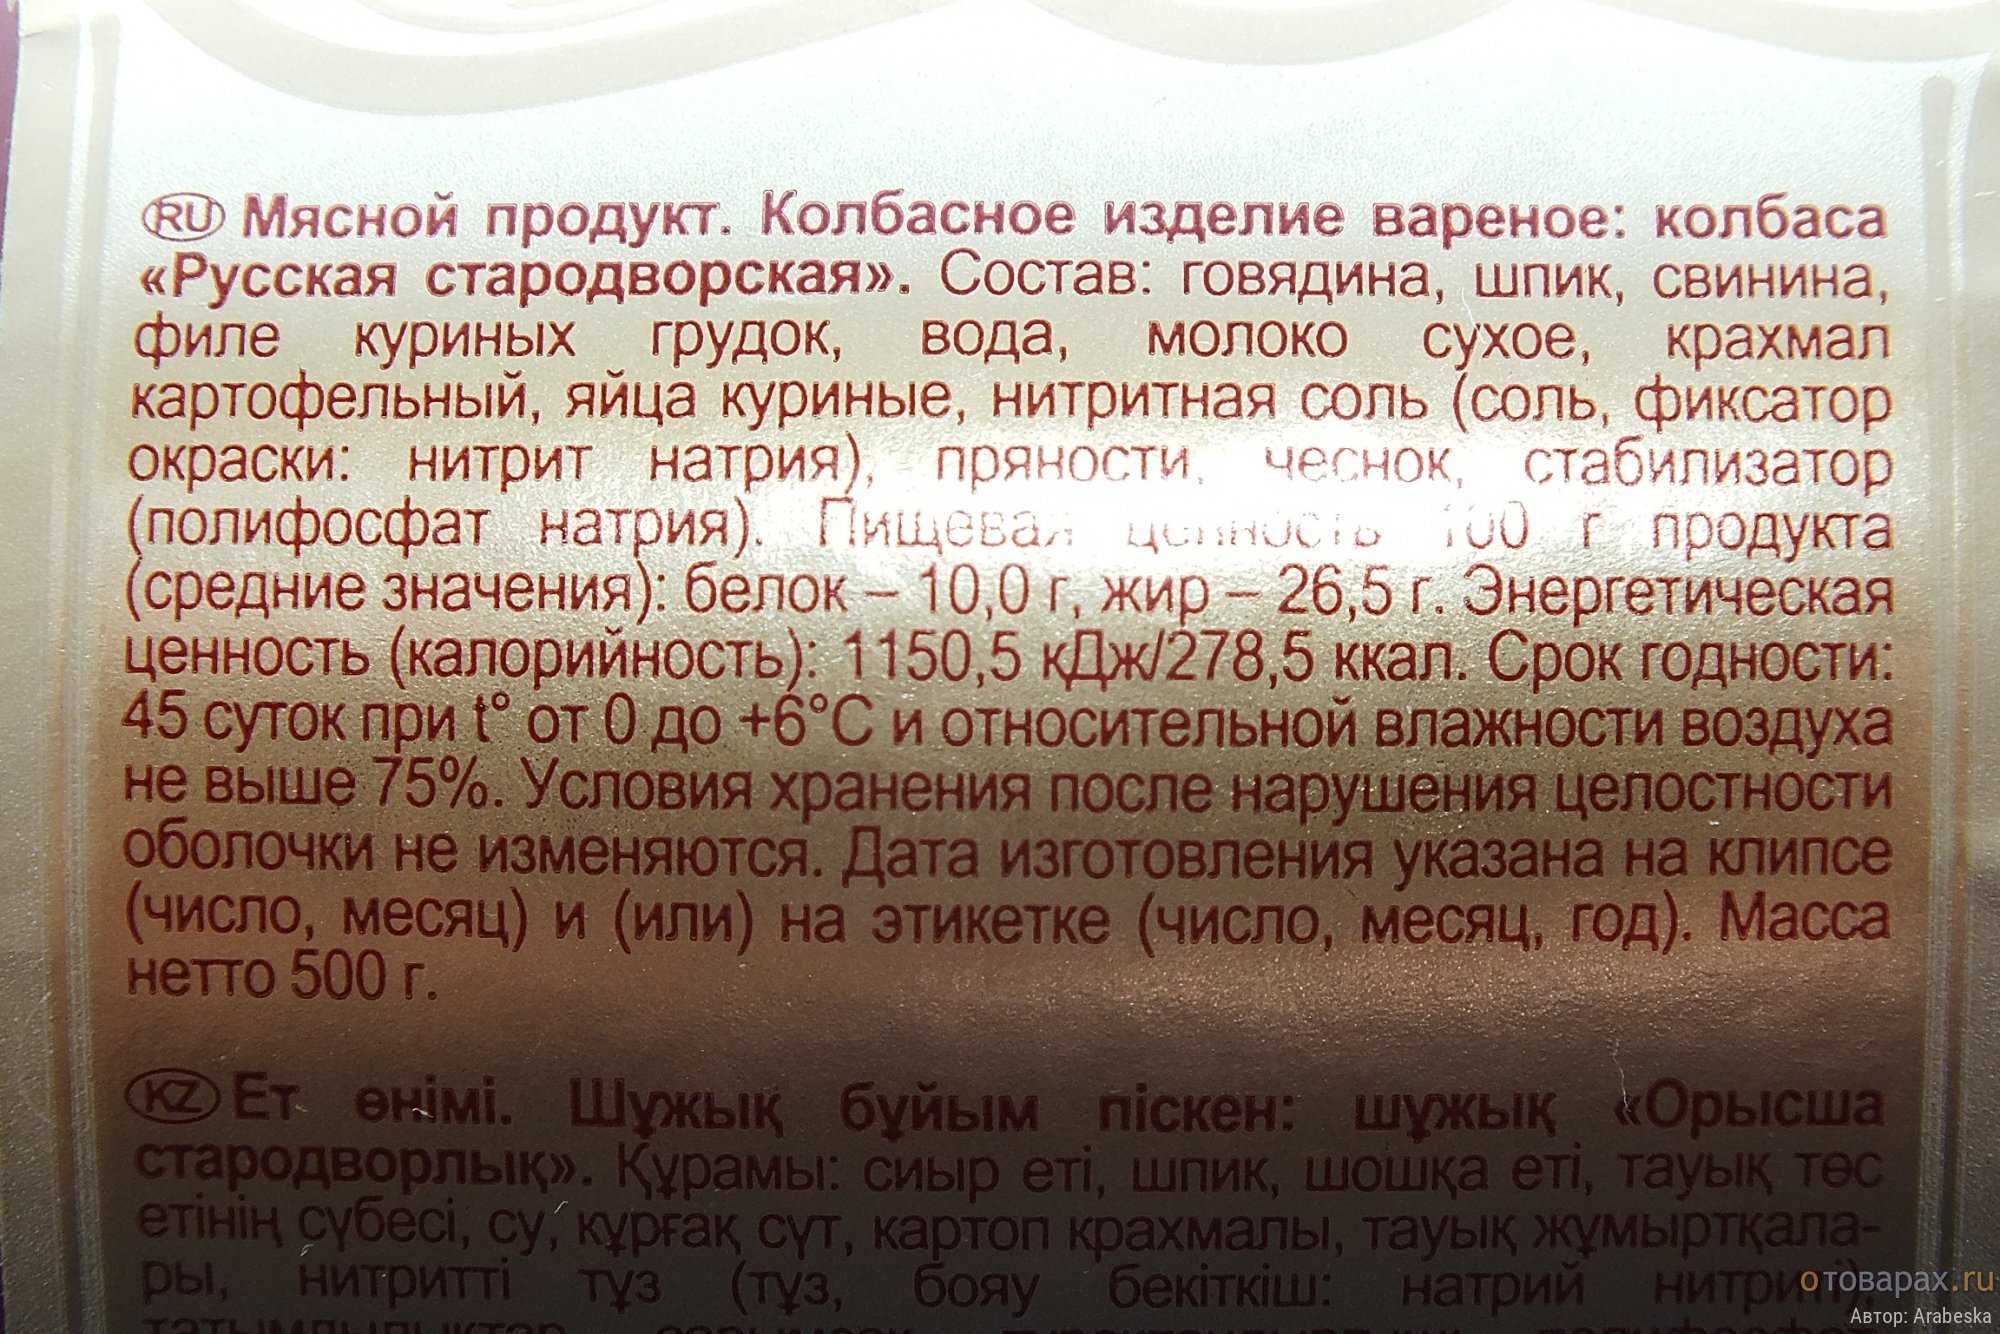 Категория колбасы какая лучше а или б — рейтинг 2022 года в россии и мире